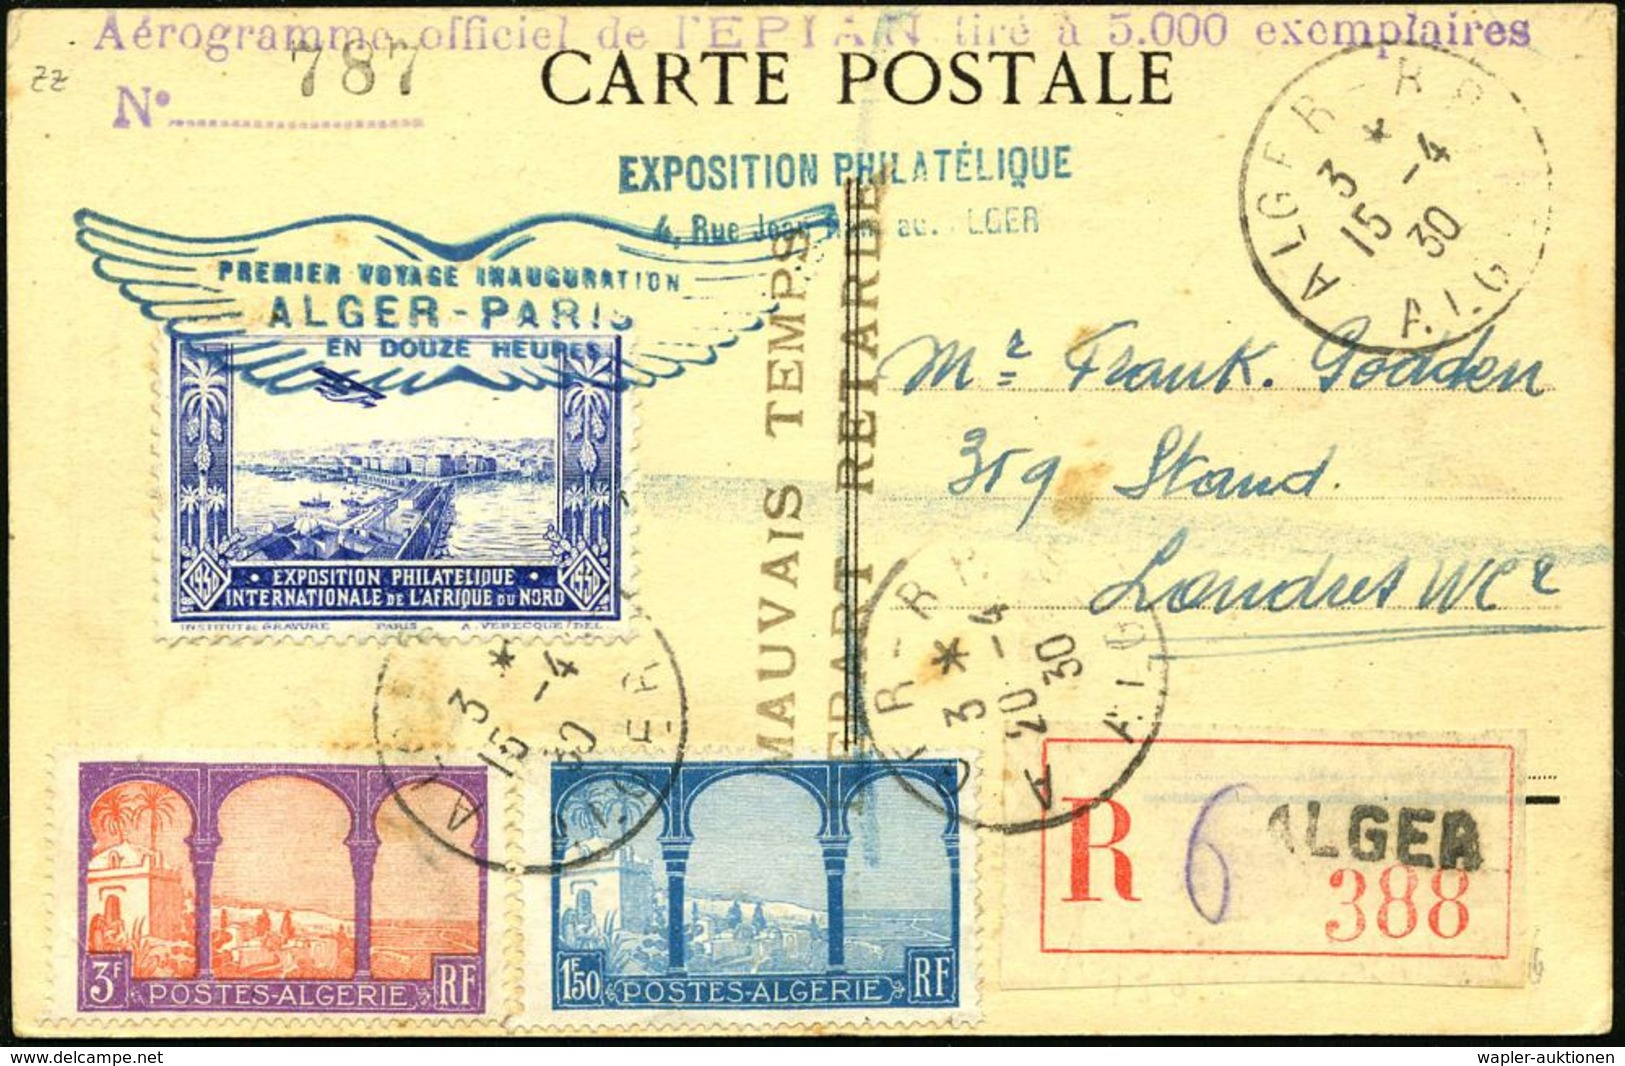 ALGERIEN 1930 (15.4.) Erstflug: Algier - Paris, Blaue Flp.-Vign.: Expos.Philatélique + Bl. Flügel-HdN: PREMIER VOYAGE IN - Sonstige (Luft)